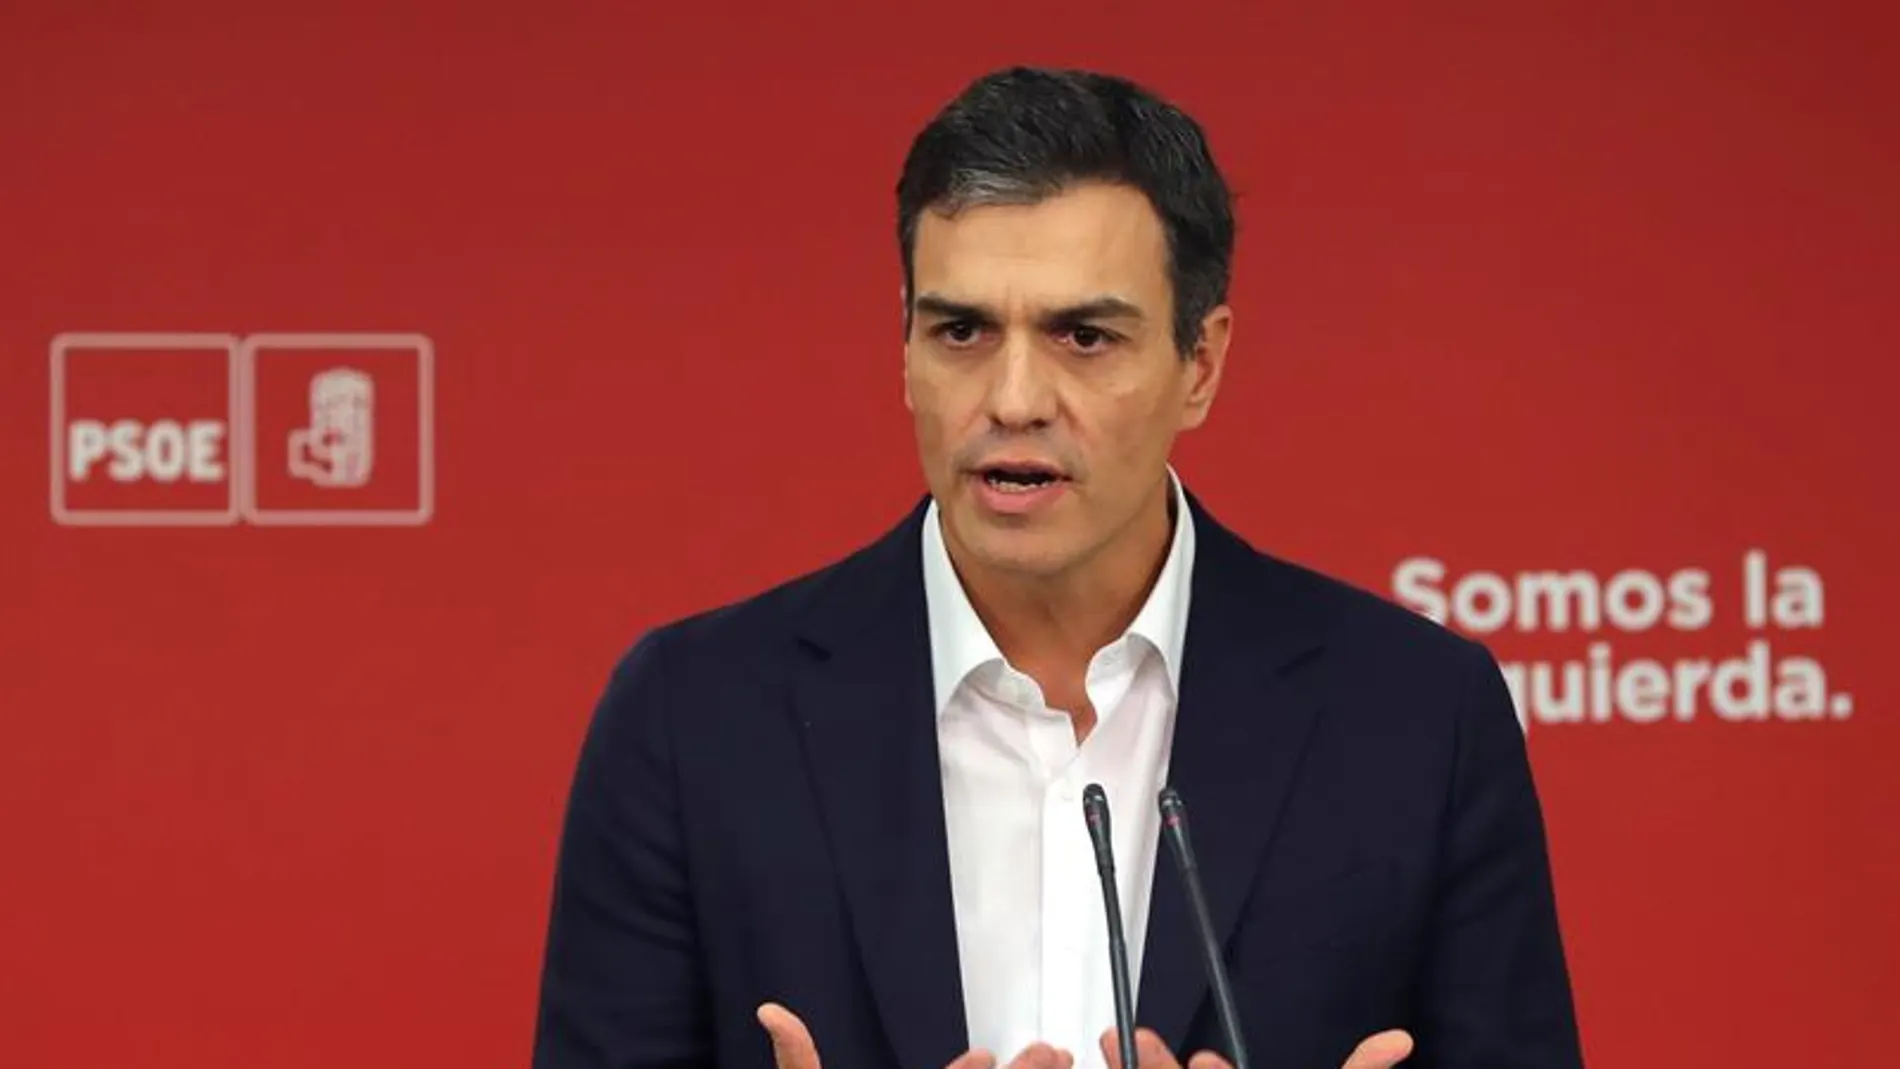 El secretario general del PSOE, Pedro Sánchez, en Ferraz para valorar las palabras de Puigdemont